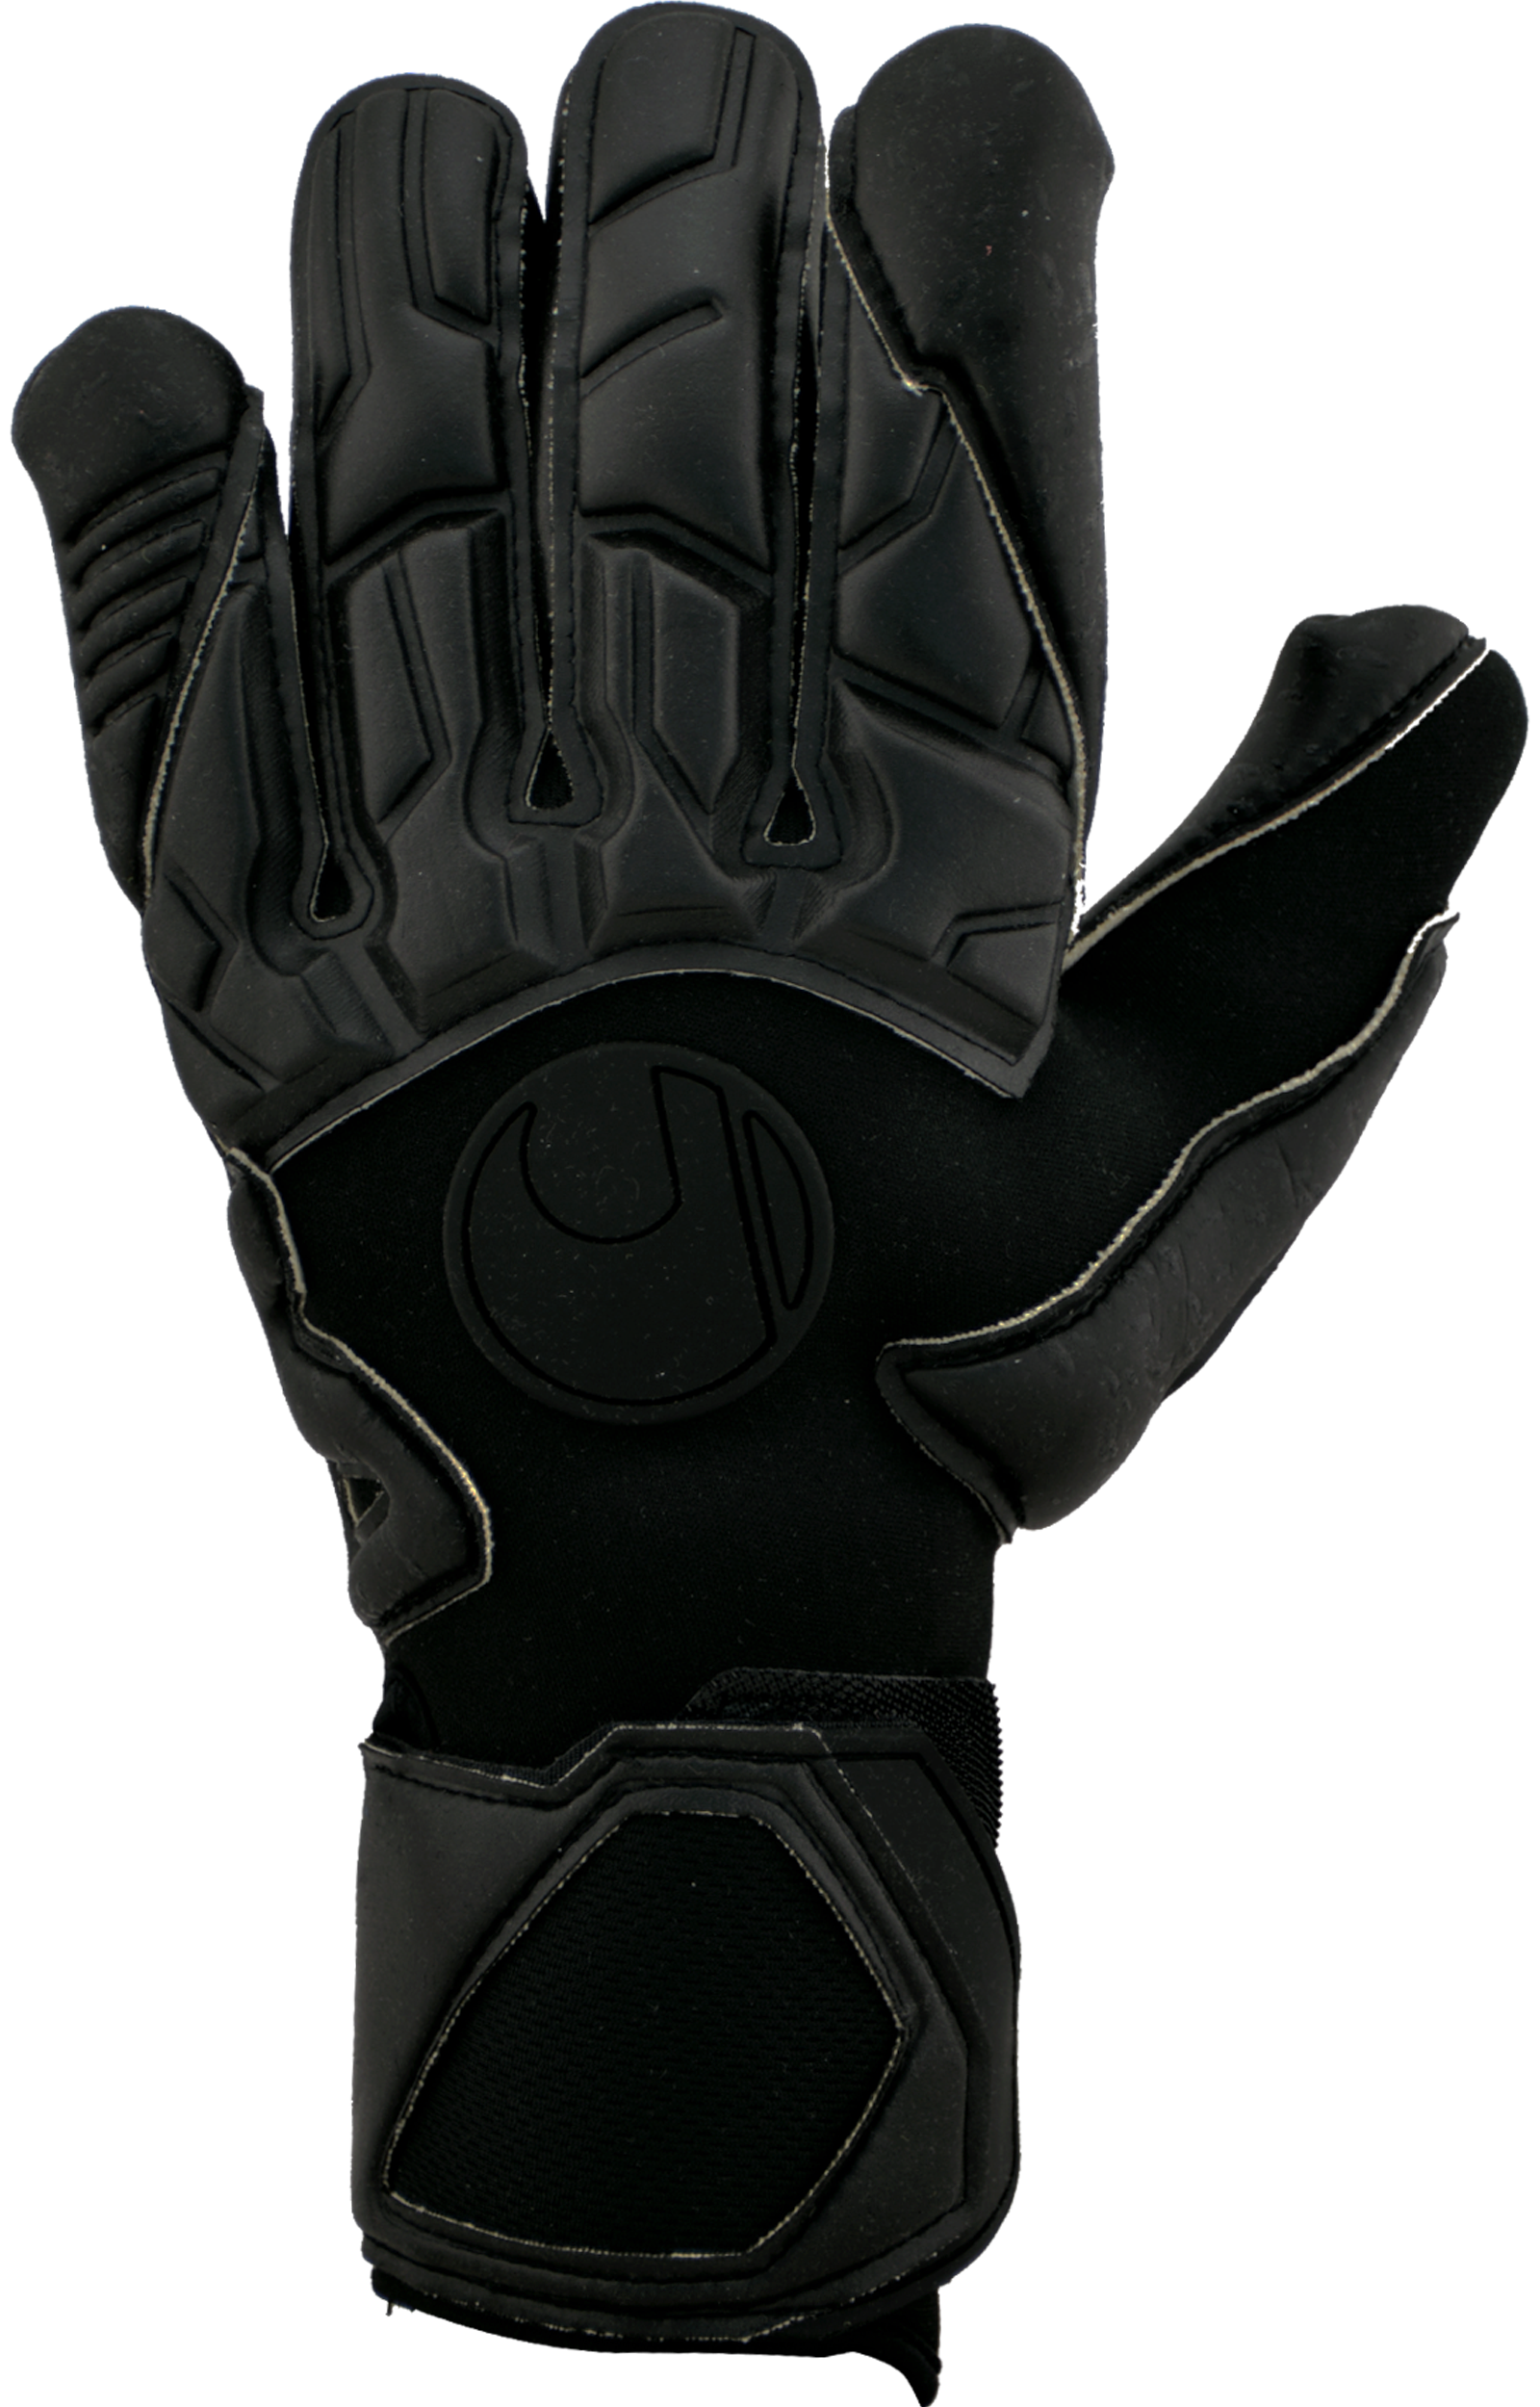 uhlsport Goalkeeper Glove Bag Black Edition Size One Size Black 